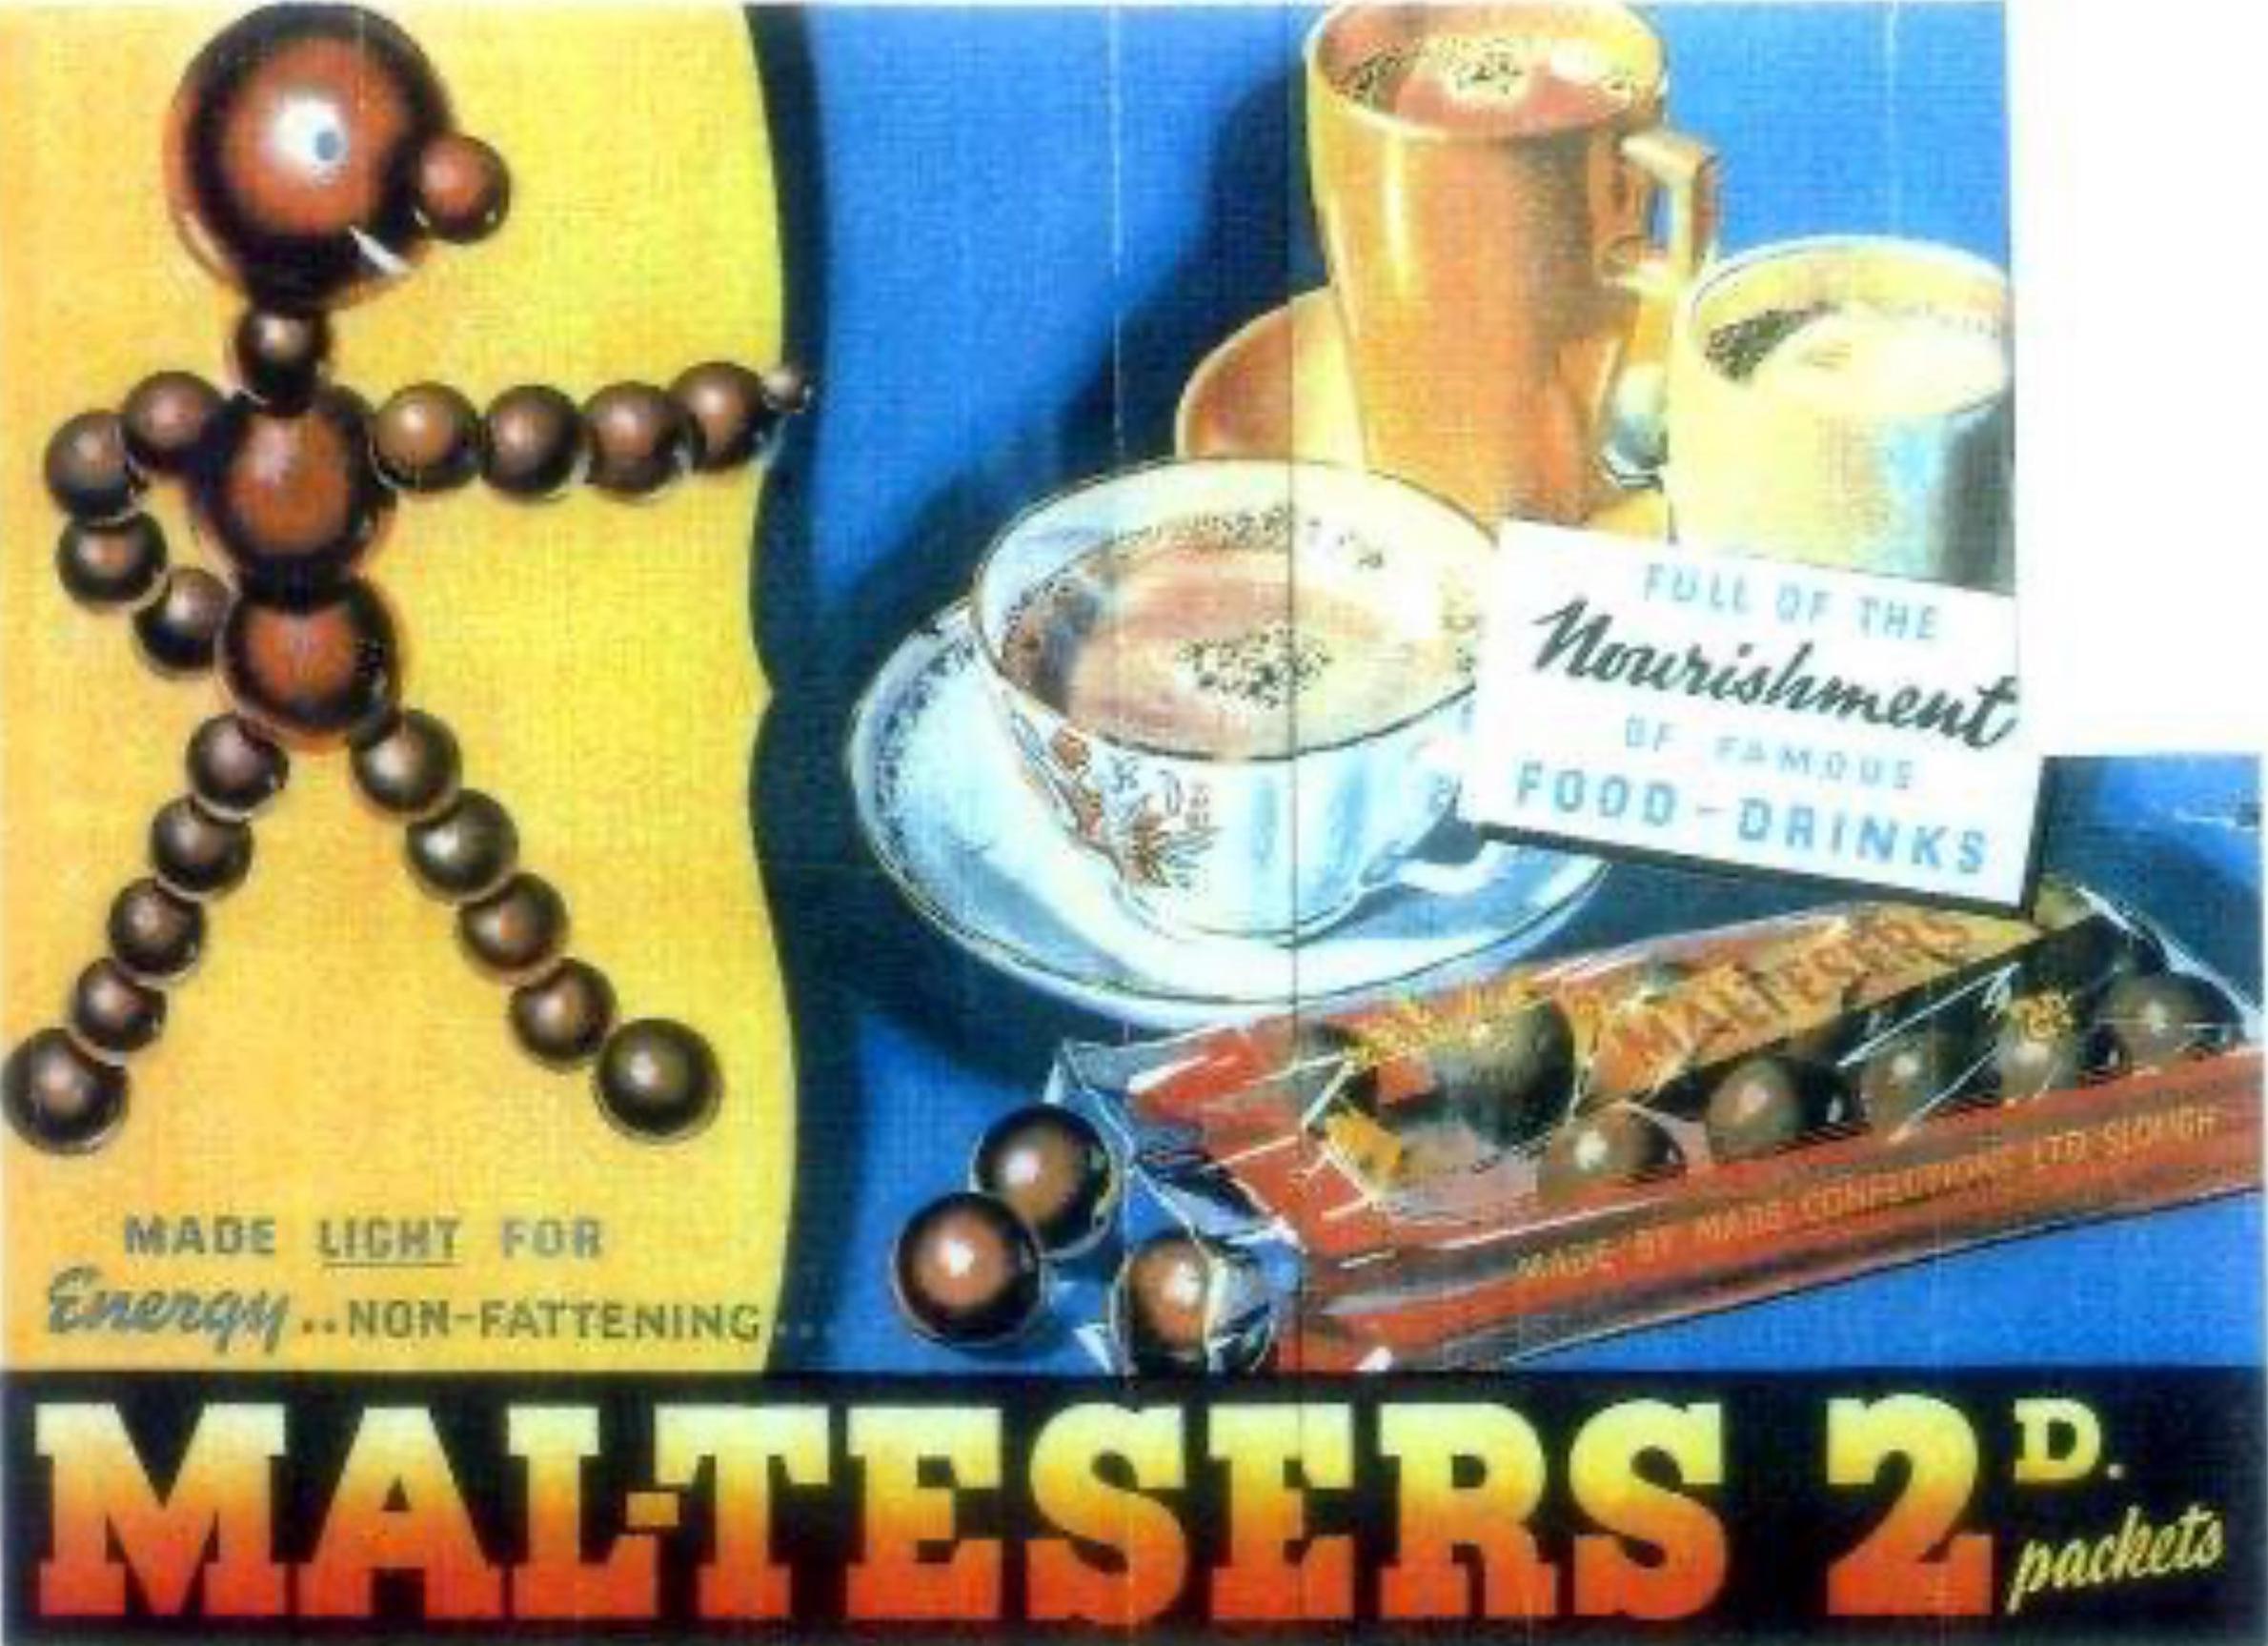 Publicité de Maltesers des années 1930 montrant une figure faite de Maltesers pointant vers un paquet de Maltesers et de tasses de café